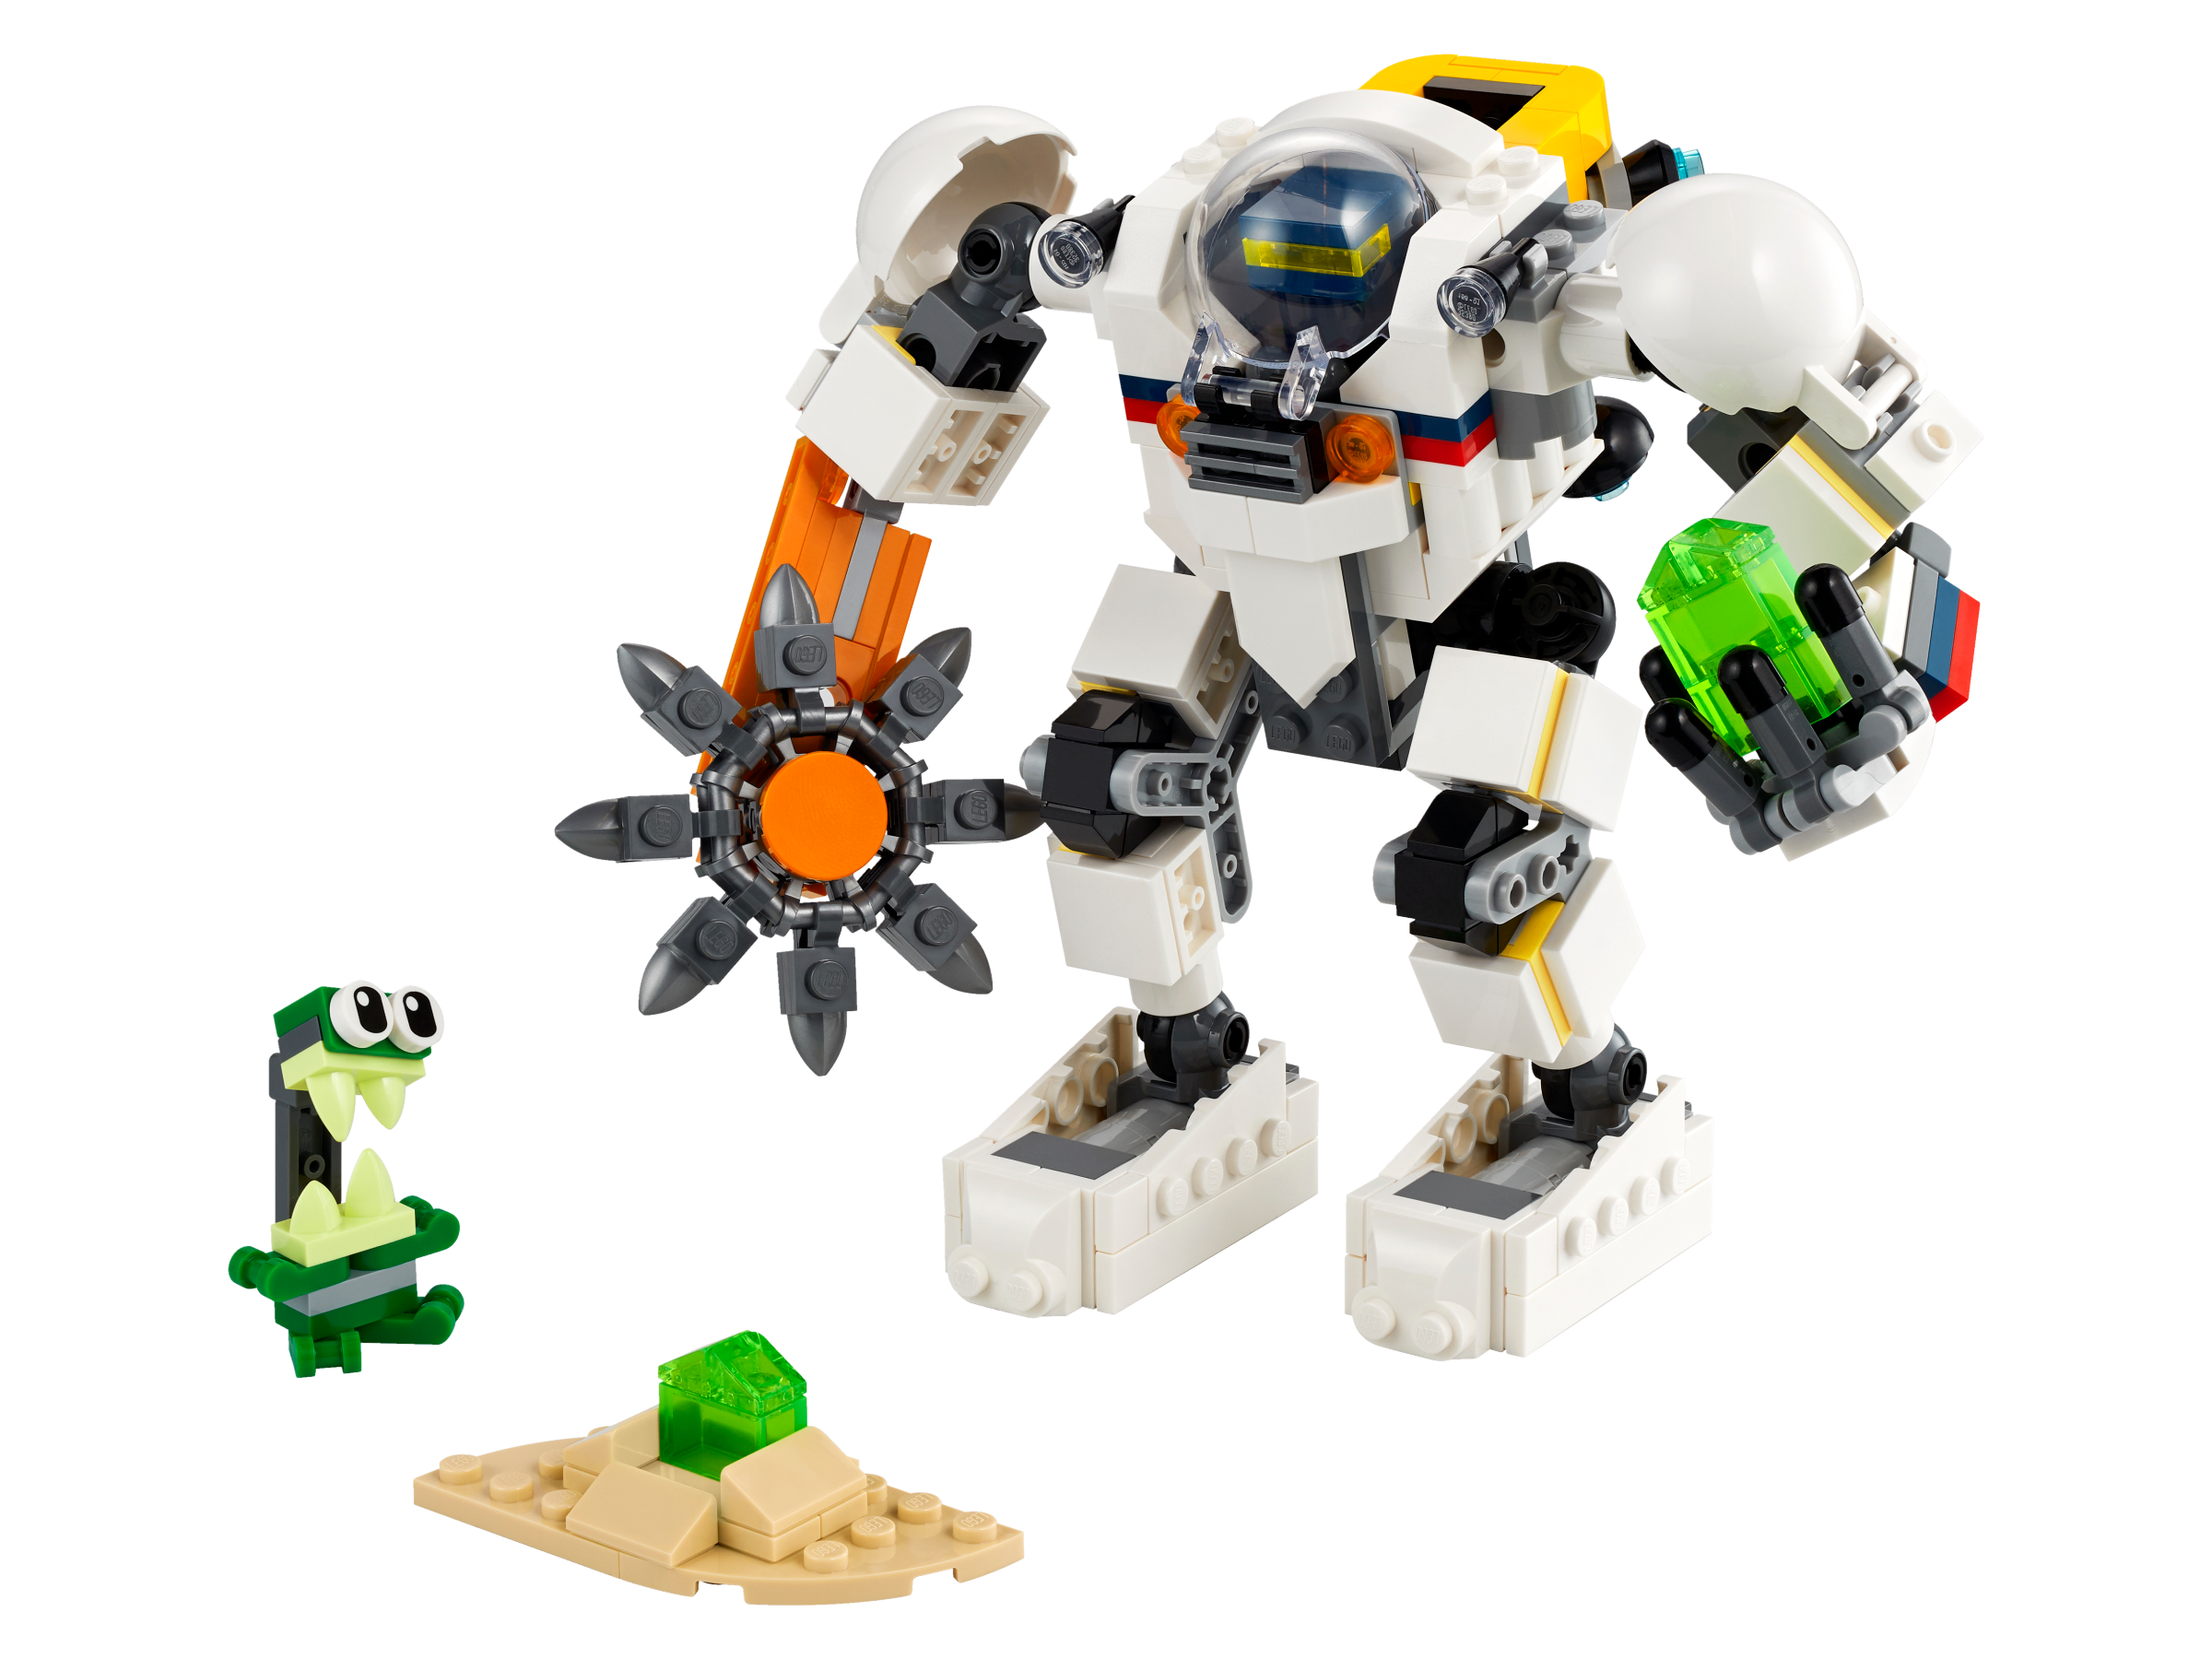 LEGO® Creator 3-in-1 31115 Weltraum-Mech